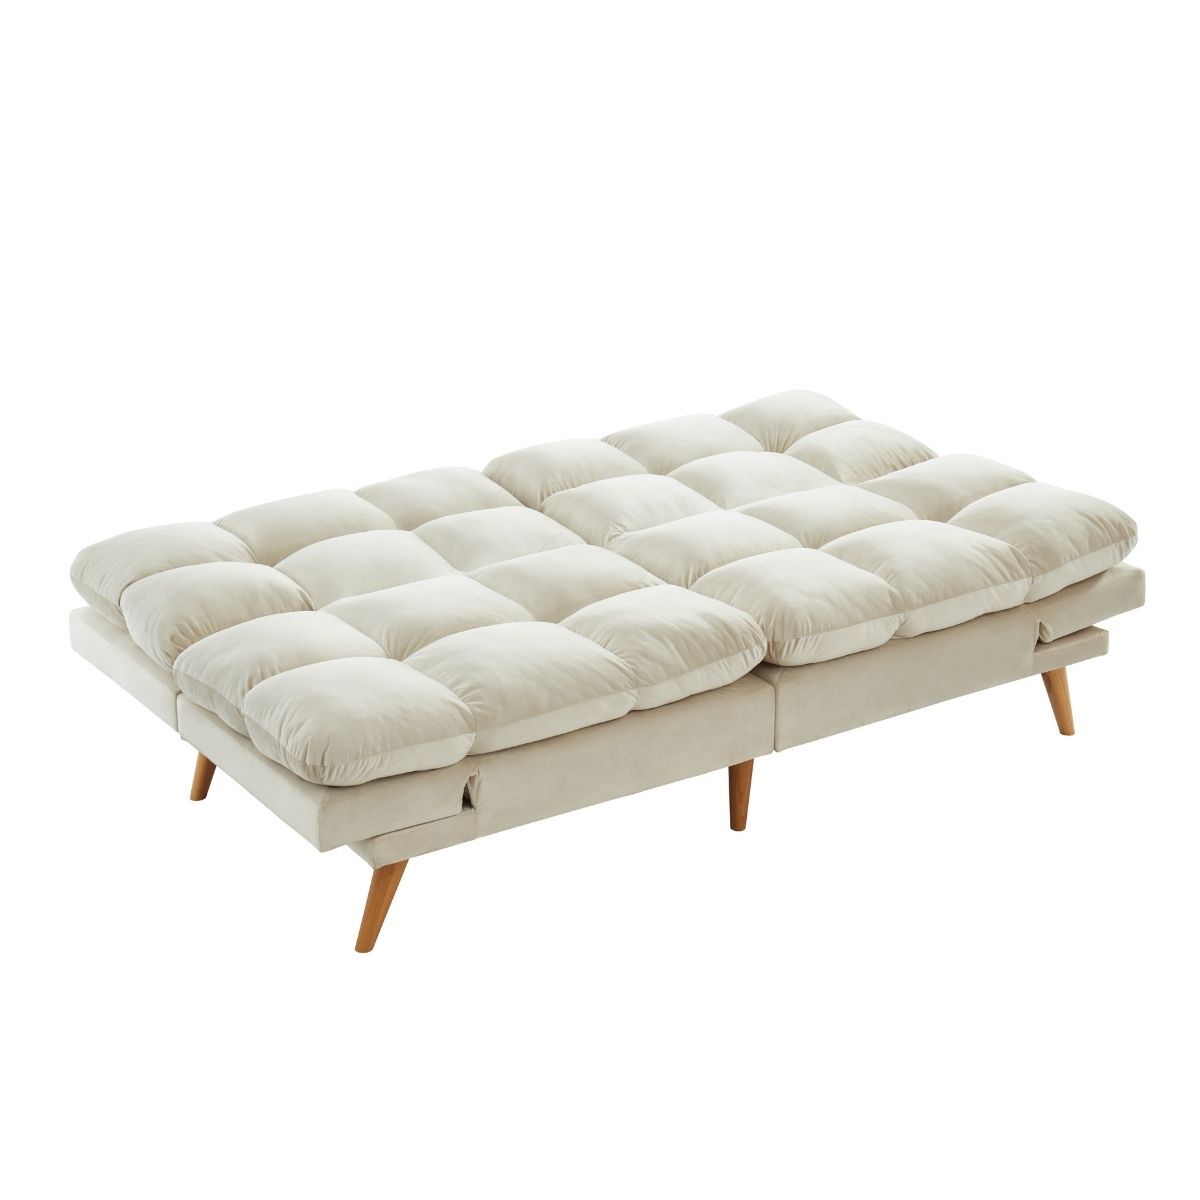 Alexa 3 Seater Velvet Sofa Bed Futon Cream